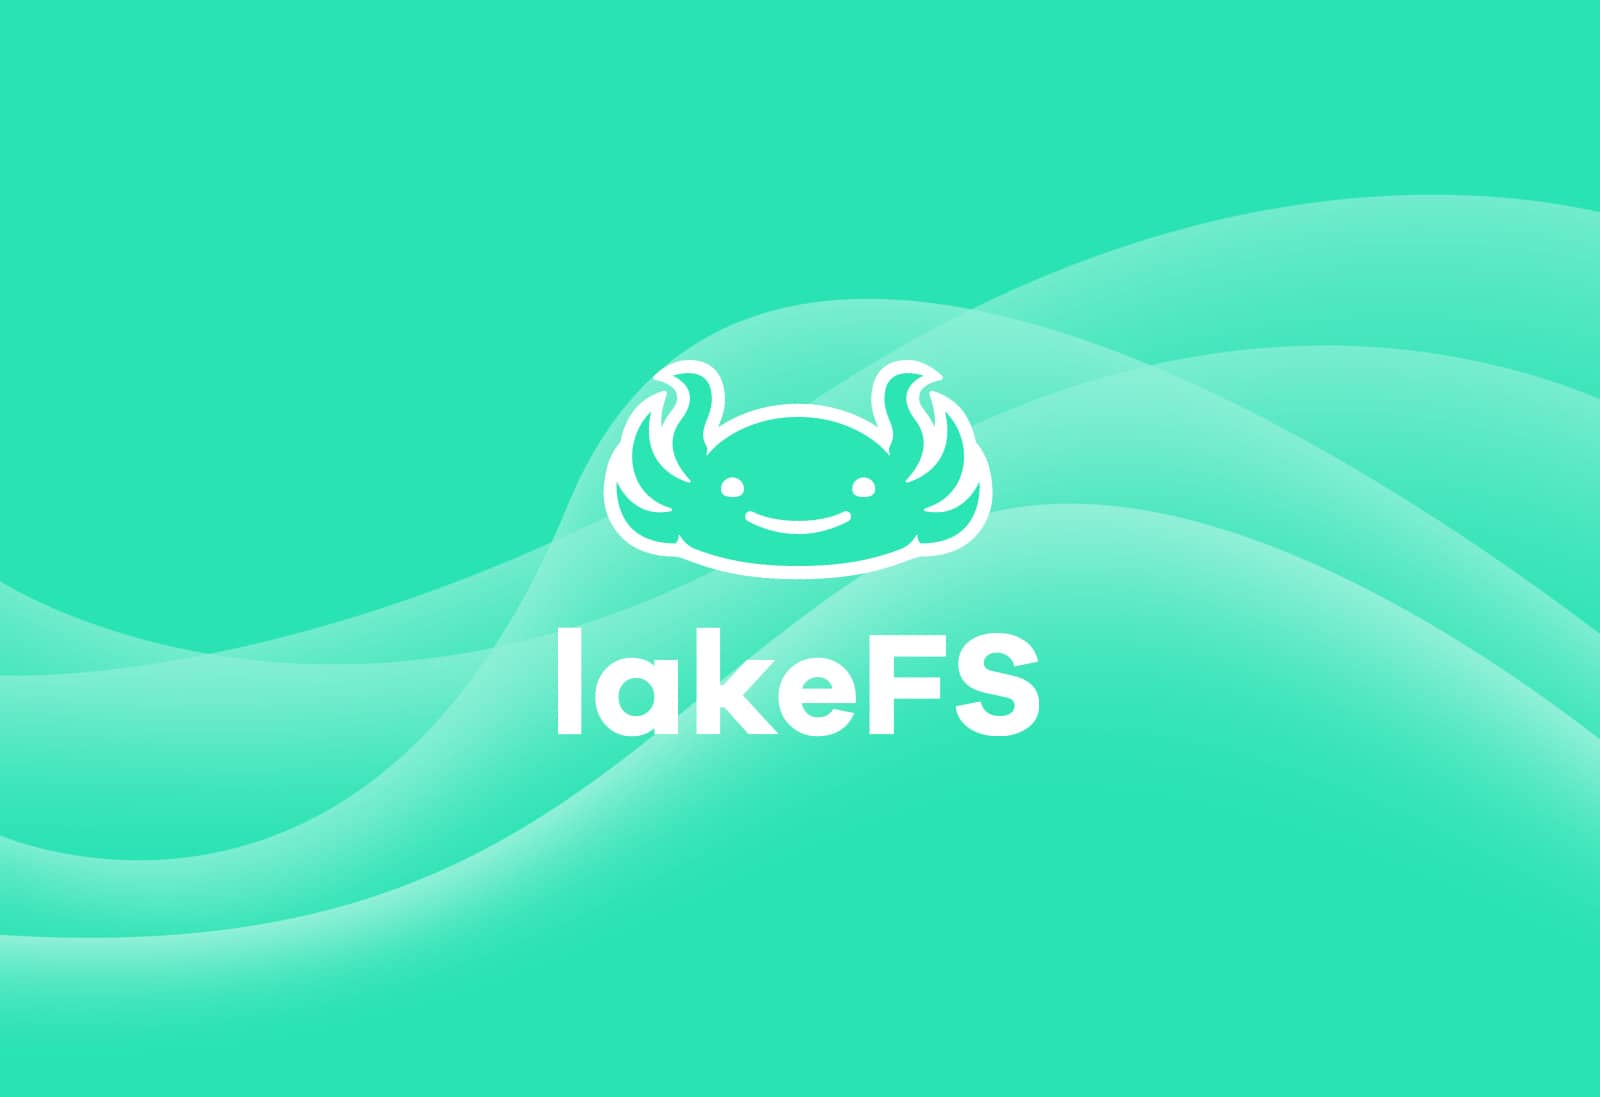 Branding- LakeFS by Treeverse logo